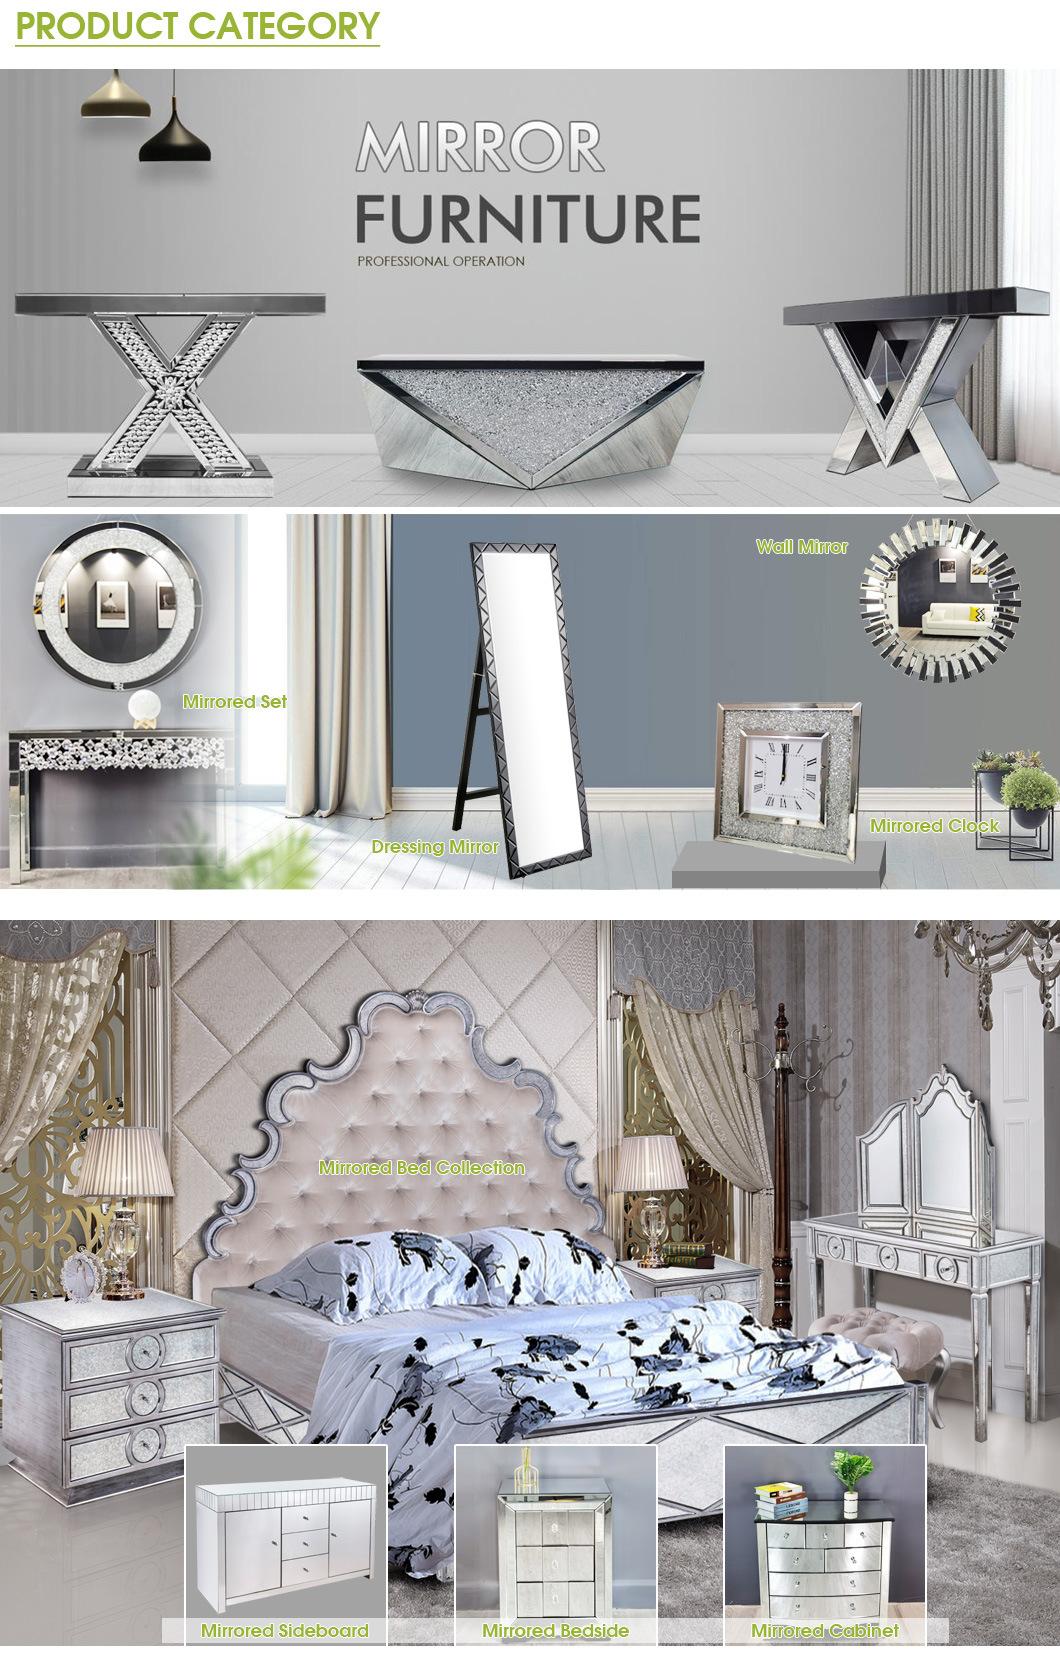 MID East Style Dubai Luxury Glass Furniture End Table Bedroom Furniture